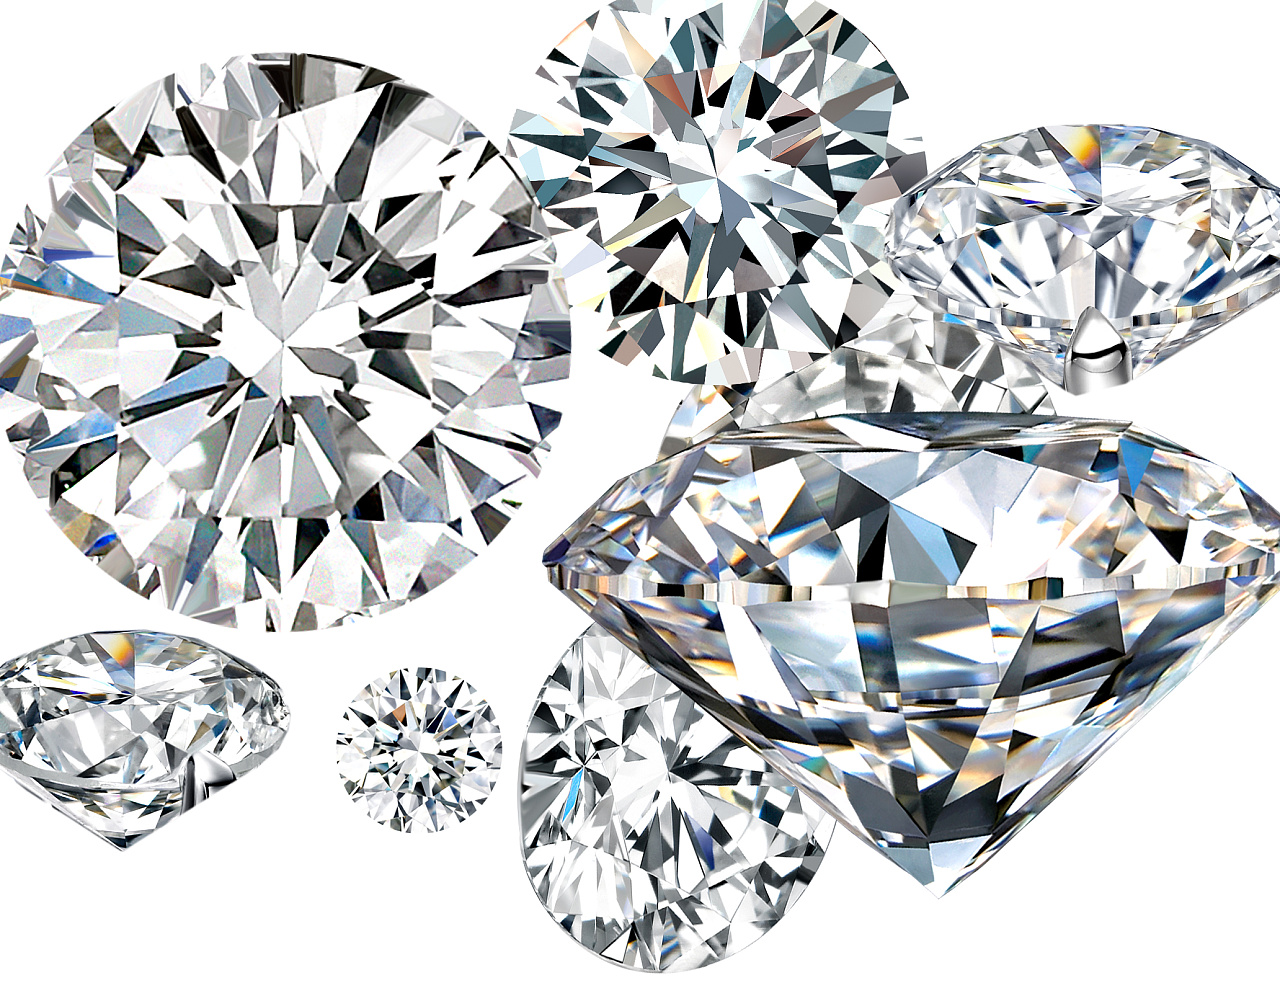 价值连城的顶级钻石 - 珠宝资讯